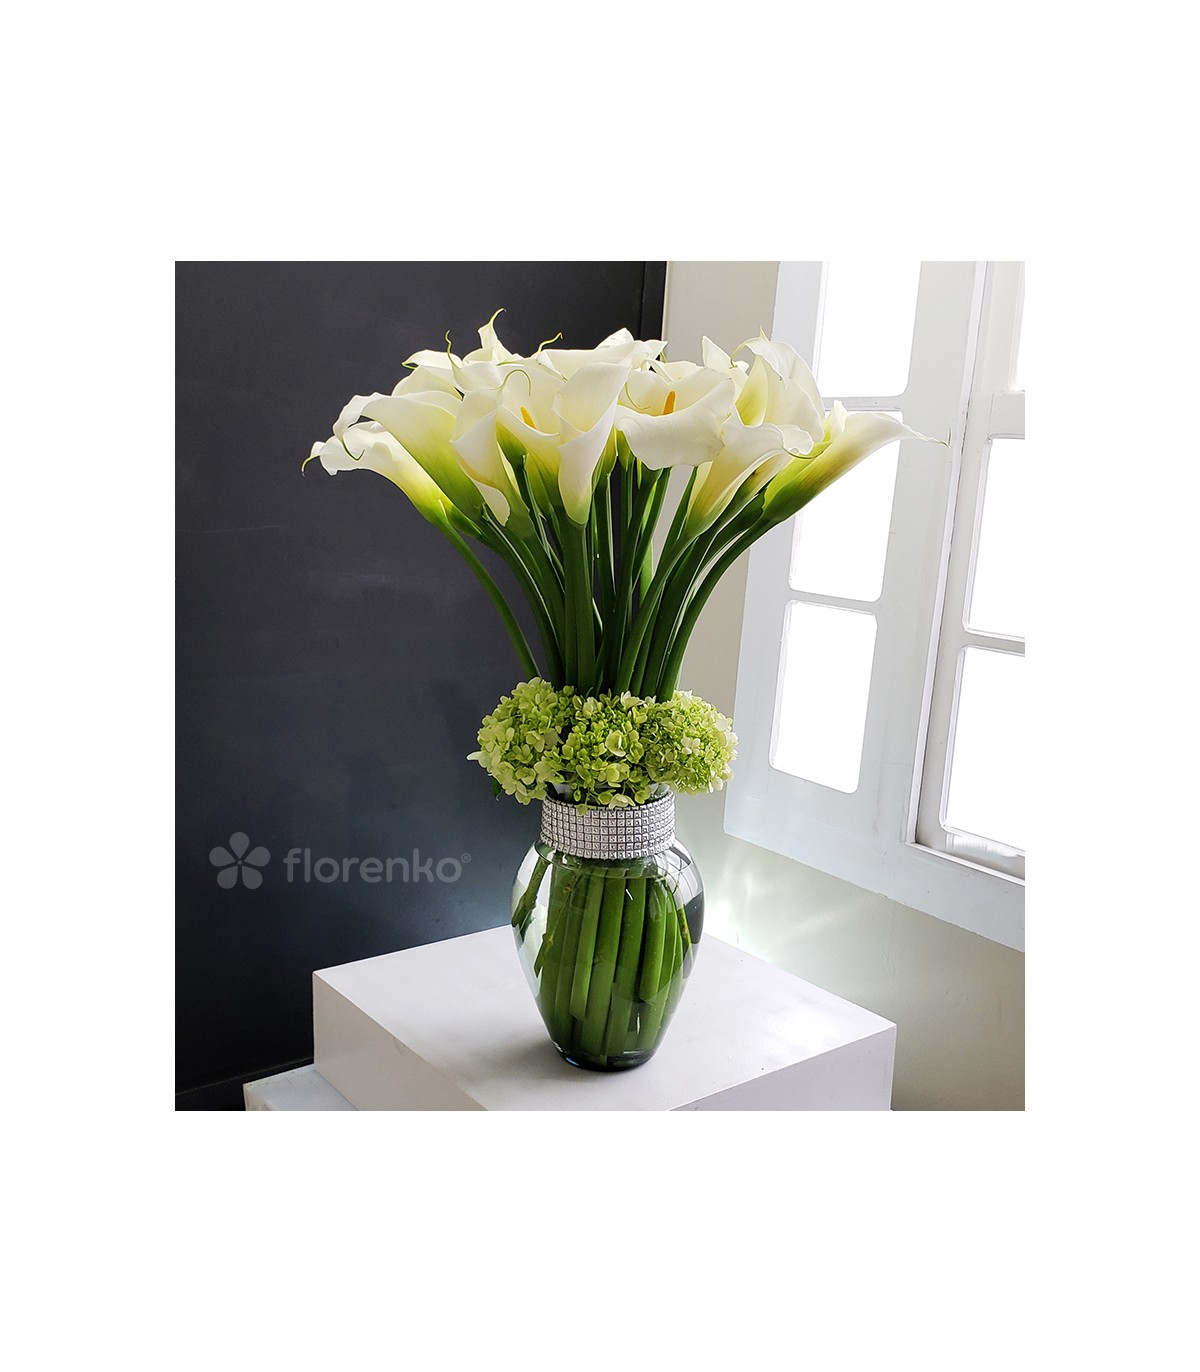 Elegantes calas lilis blancas y hortensias blancas